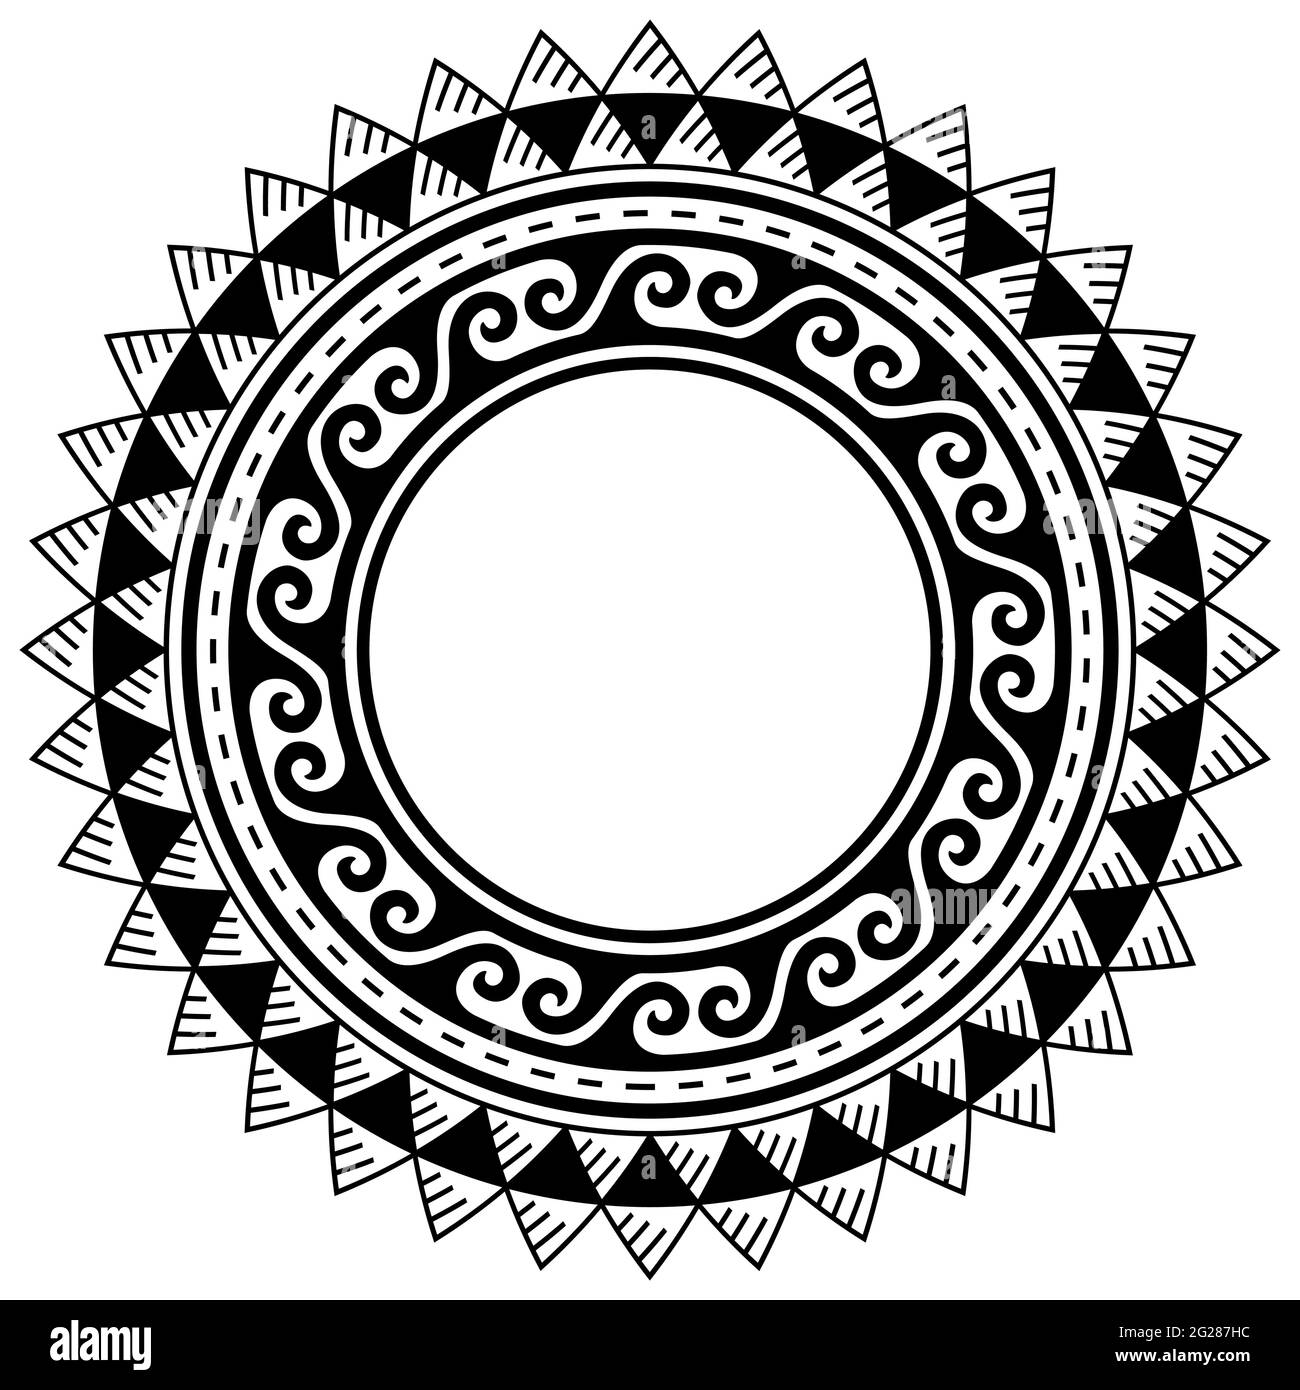 Schema vettoriale mandala in stile tatuaggio polinesiano, struttura gemetrica tribale hawaiana o disegno di bordo Illustrazione Vettoriale